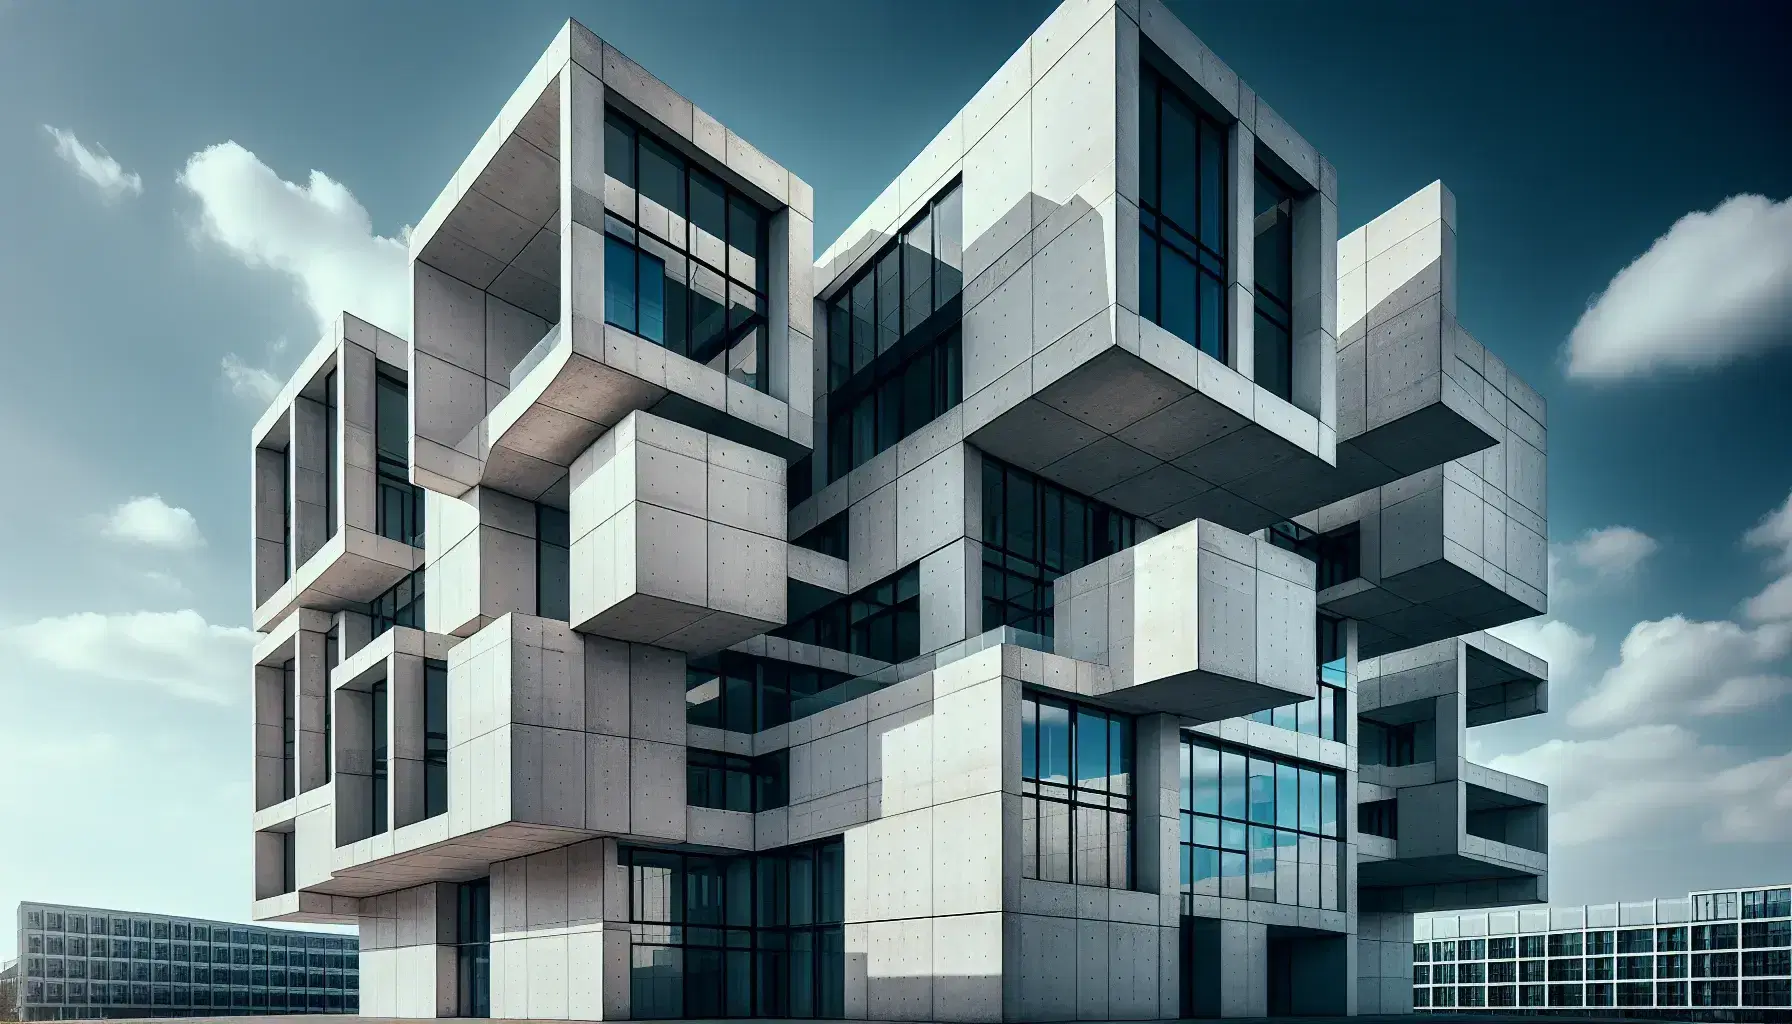 Fachada moderna de edificio con patrón geométrico de paneles de concreto y ventanas reflejando el cielo azul, destacando la arquitectura abstracta y el juego de luz y sombra.